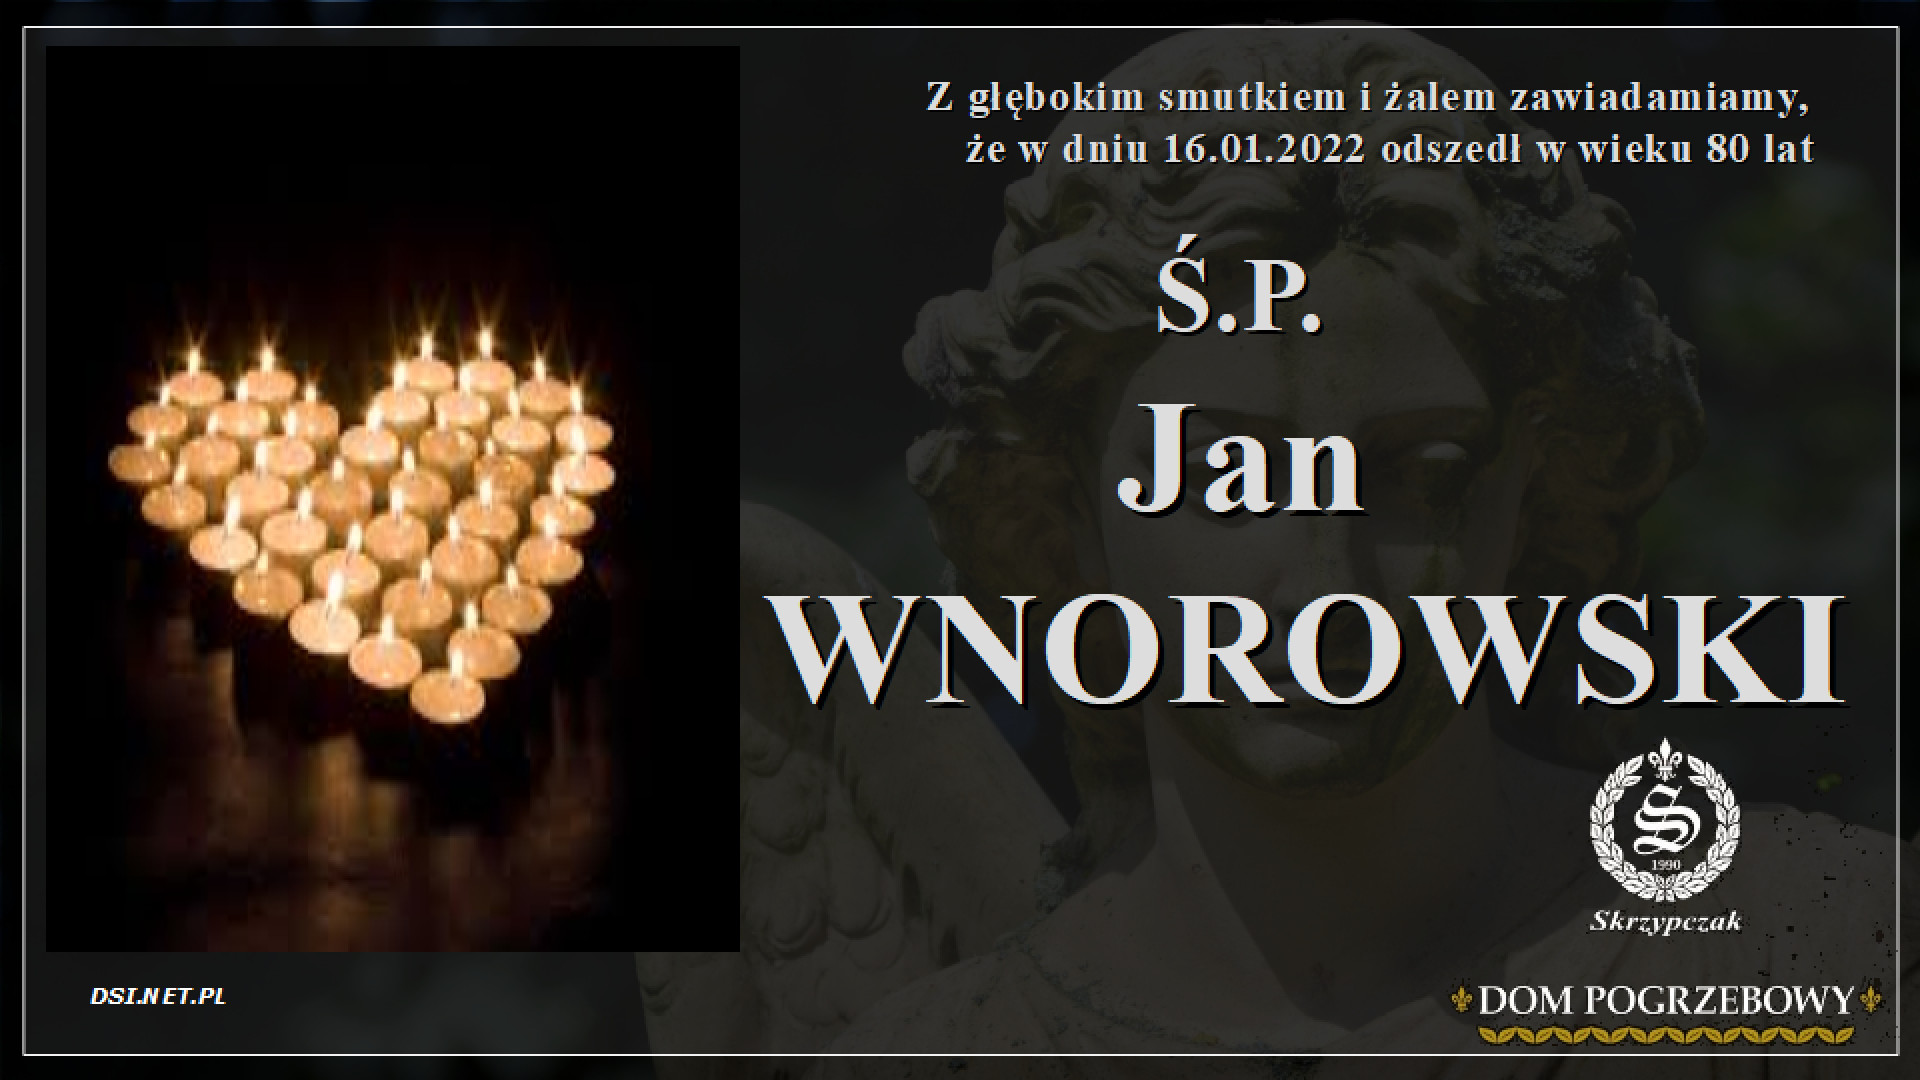 Ś.P. Jan Wnorowski